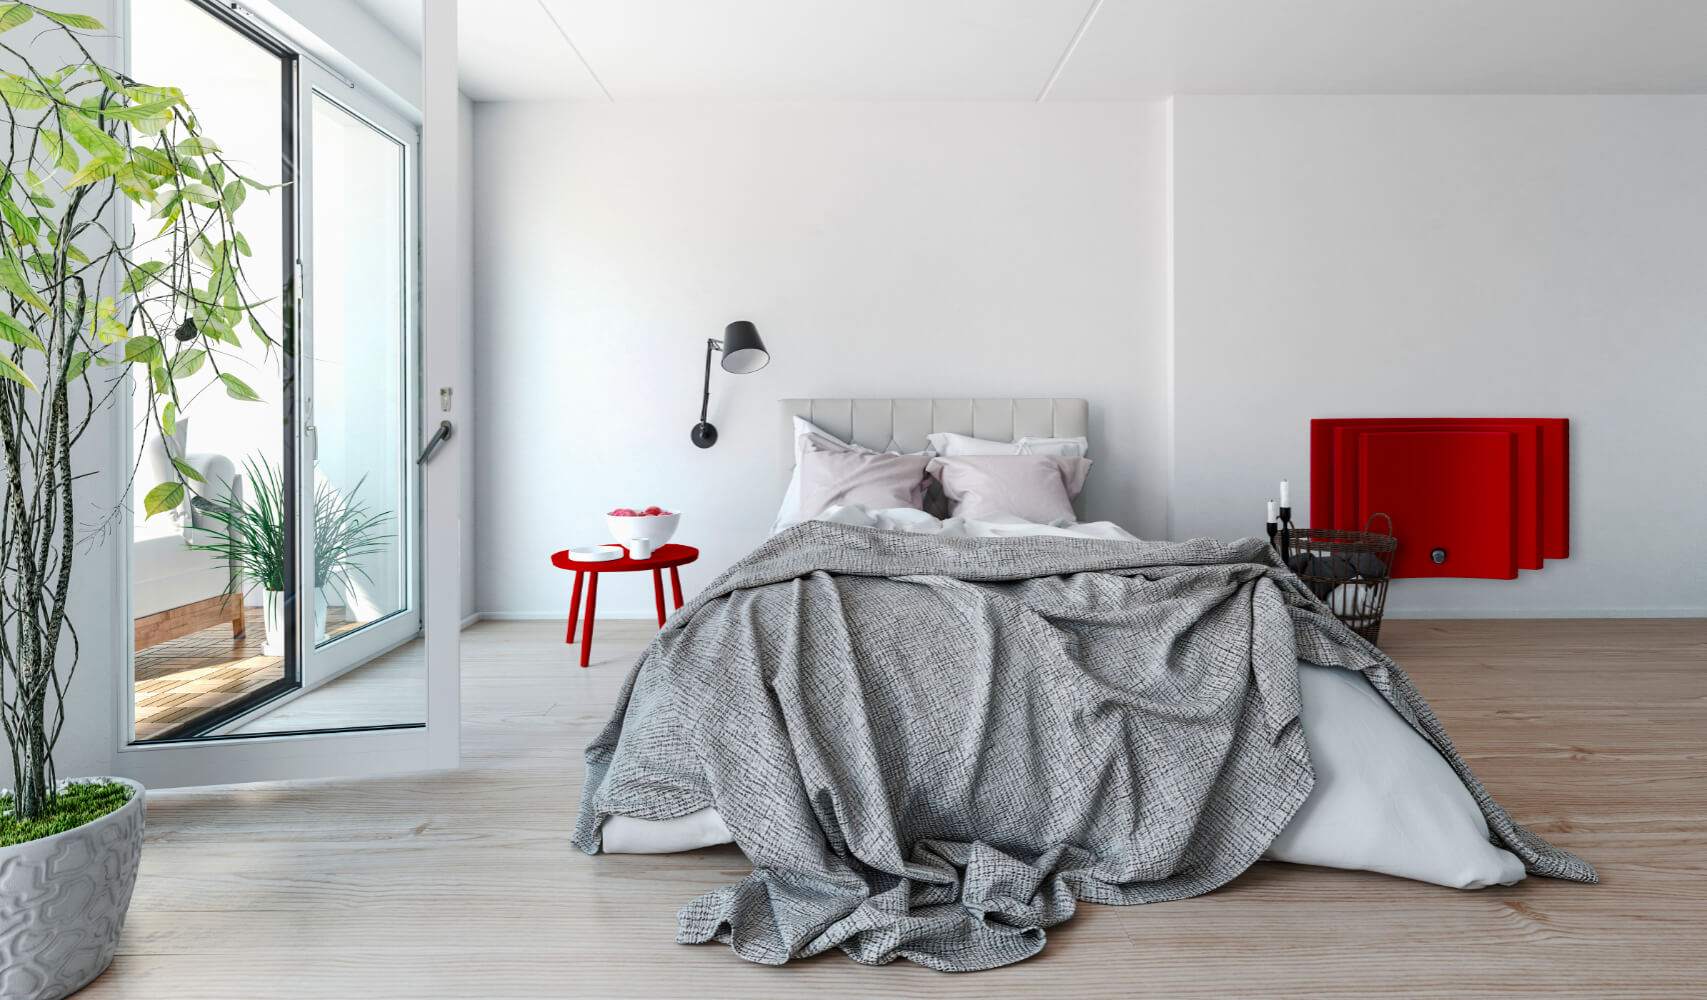 TomTon Design Heizkörper R3 rot und grau in Schlafraum